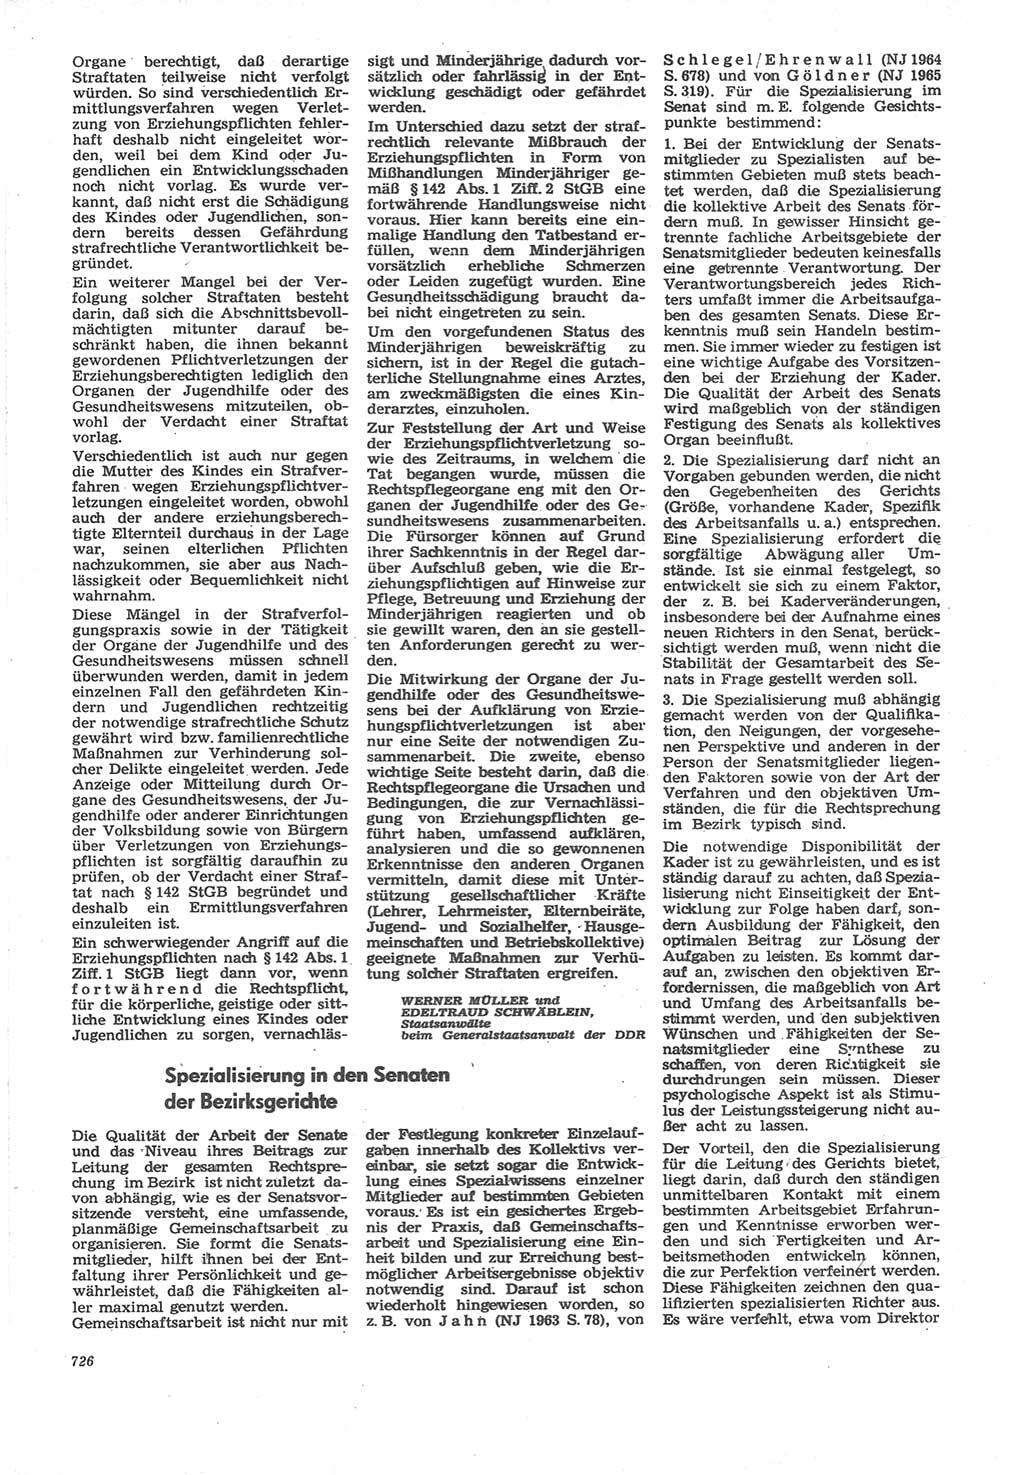 Neue Justiz (NJ), Zeitschrift für Recht und Rechtswissenschaft [Deutsche Demokratische Republik (DDR)], 22. Jahrgang 1968, Seite 726 (NJ DDR 1968, S. 726)